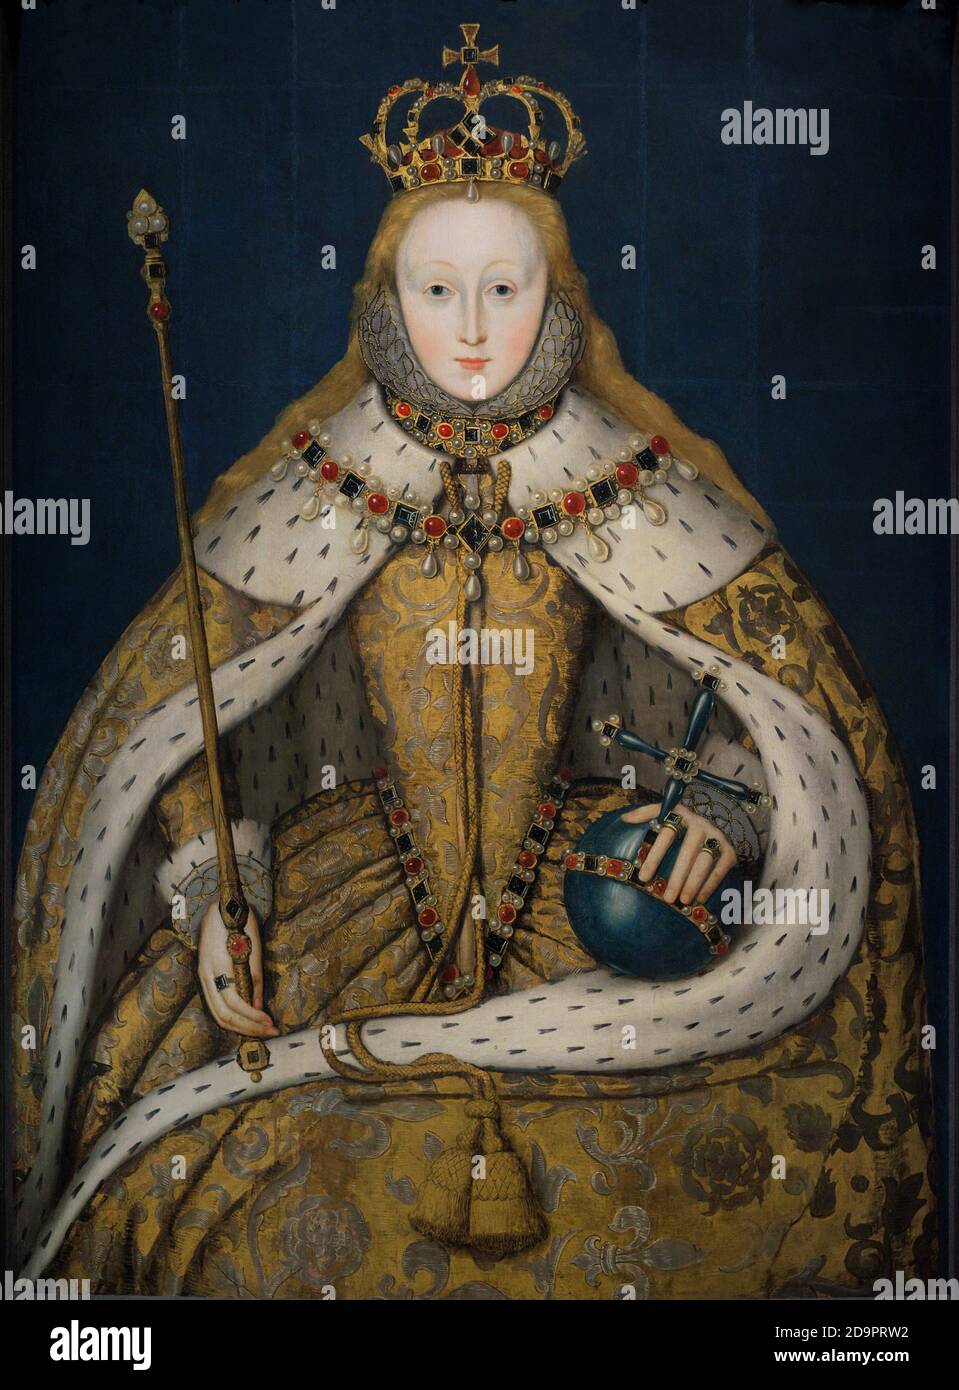 Königin Elisabeth I. von England (1533-1603. Porträt eines unbekannten englischen Künstlers. Dieses Gemälde ist als "das Krönungs-Porträt" bekannt. Elizabeth ist gekrönt dargestellt, trägt das Tuch aus Gold, das sie bei ihrer Krönung am 15. Januar 1559 trug. Öl auf Platte, c. 1600. National Portrait Gallery. London, England, Vereinigtes Königreich. Stockfoto